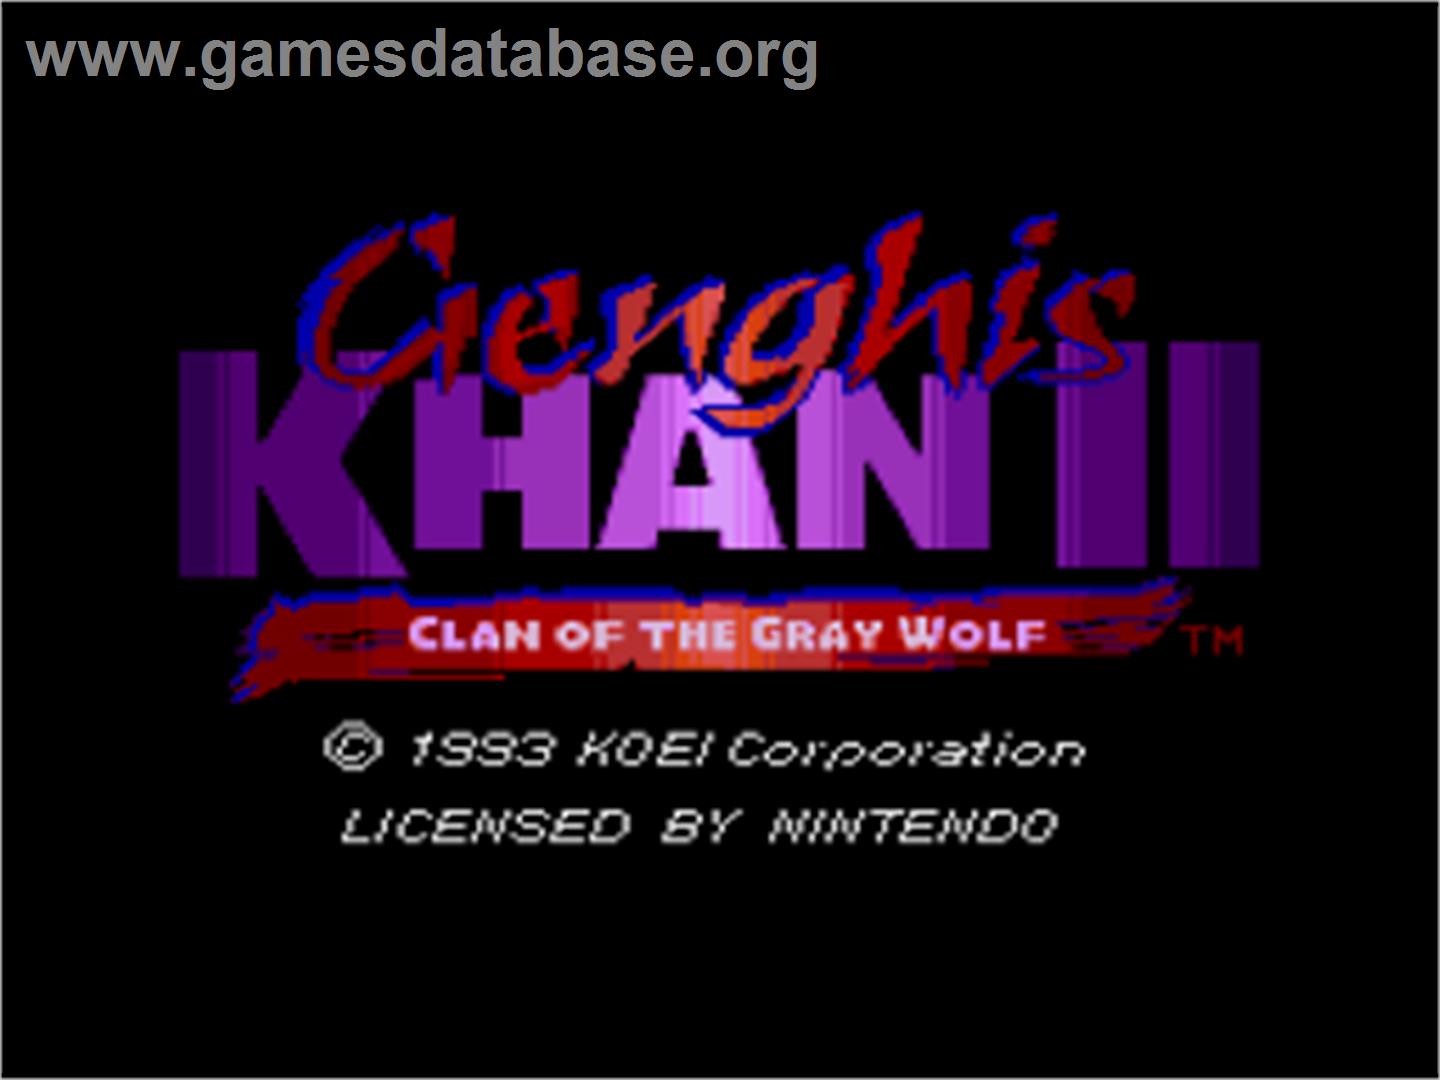 Genghis Khan II: Clan of the Grey Wolf - Nintendo SNES - Artwork - Title Screen